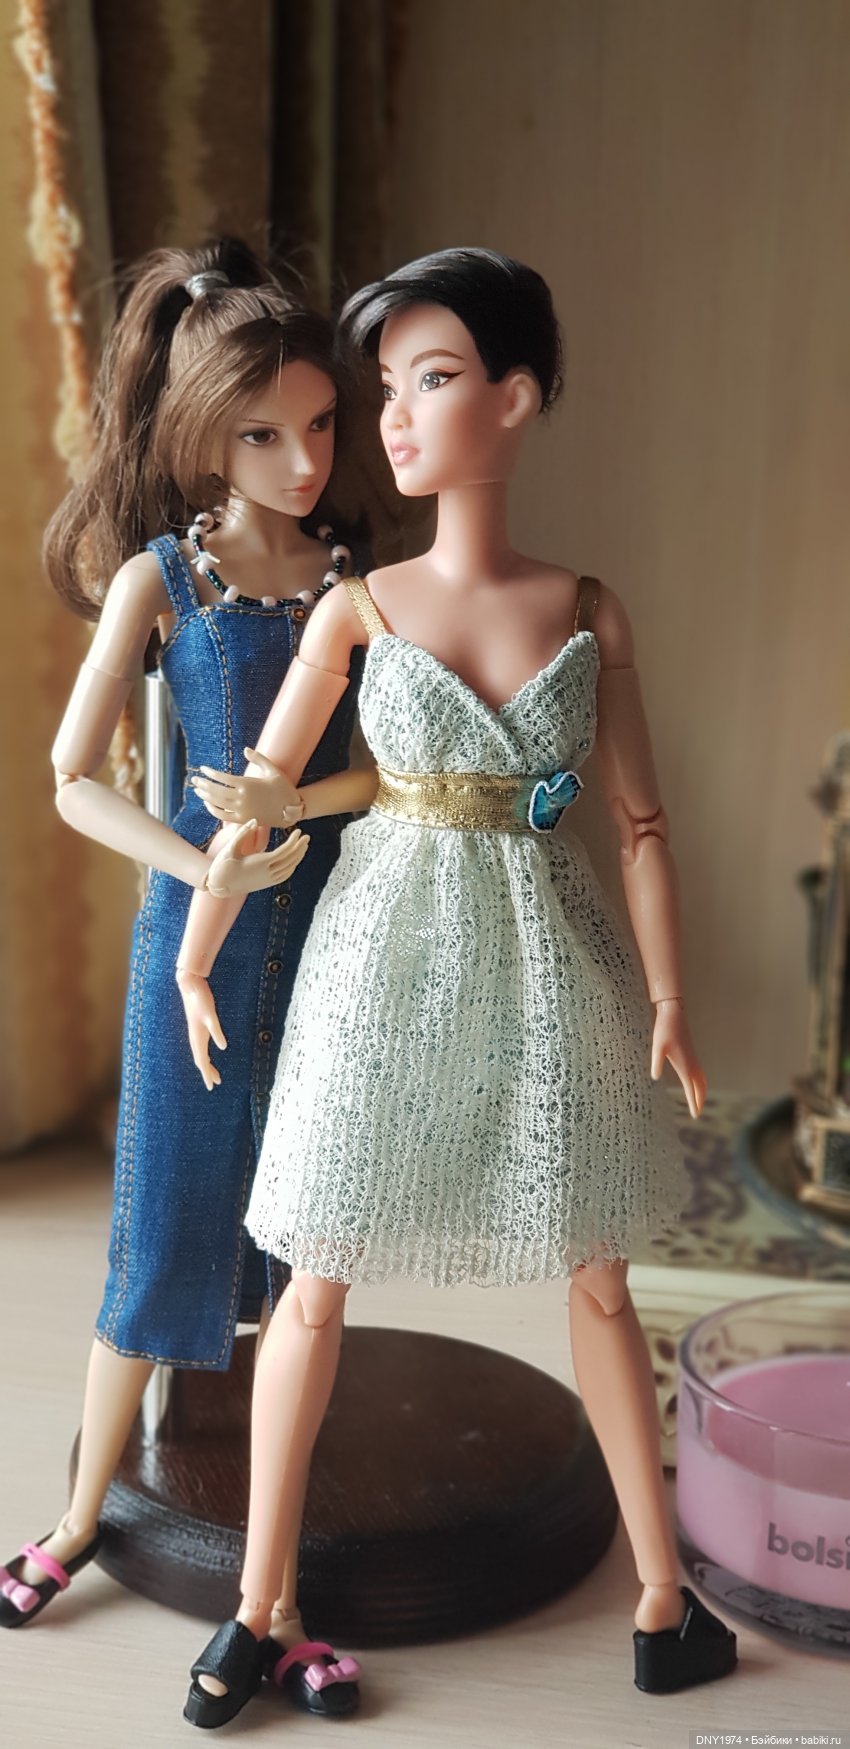 Инвентаризация. Куклы-азиатки - Наши коллекции кукол | Бэйбики - 257912